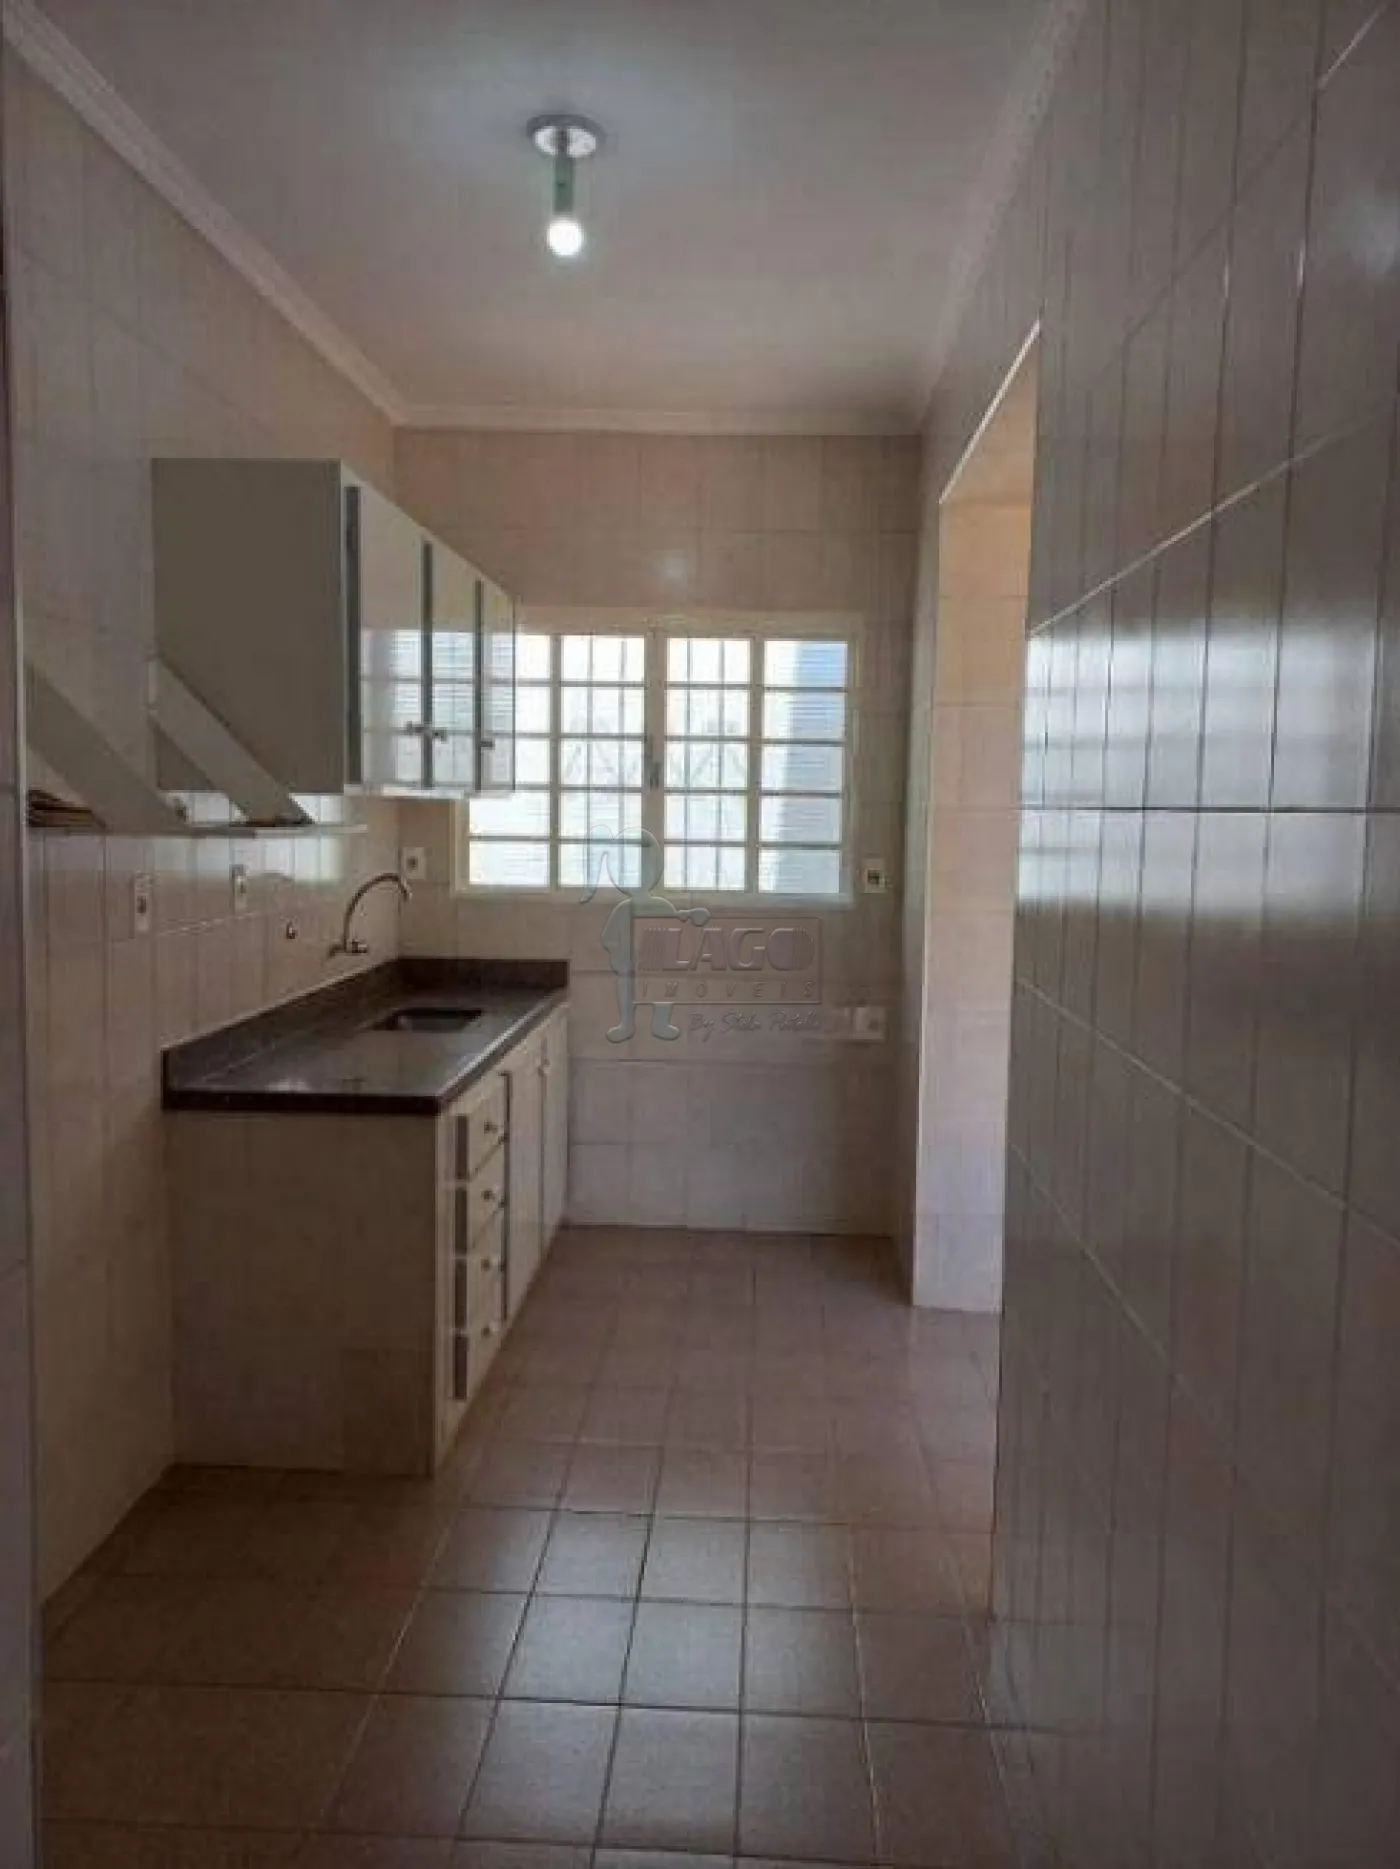 Comprar Casa / Padrão em Ribeirão Preto R$ 430.000,00 - Foto 13